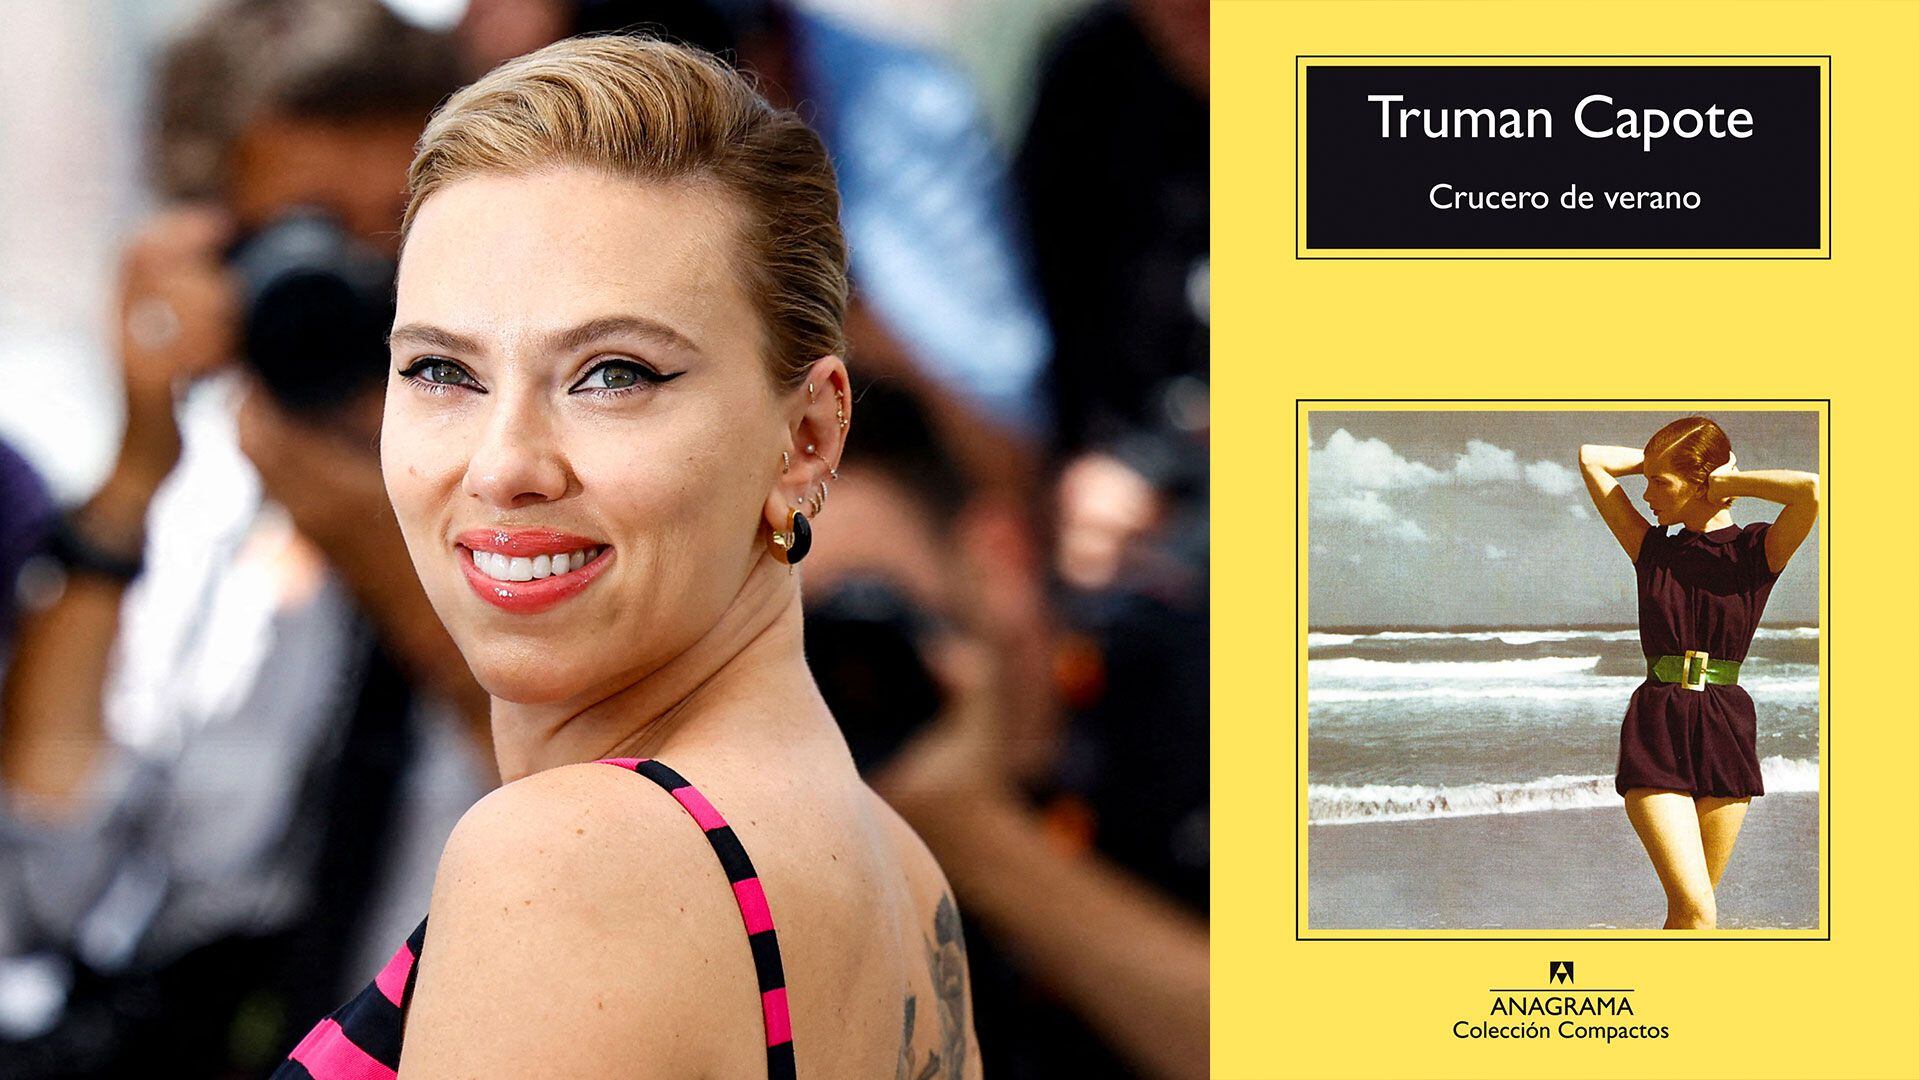 Scarlett Johansson - “Crucero de verano” (Truman Capote)